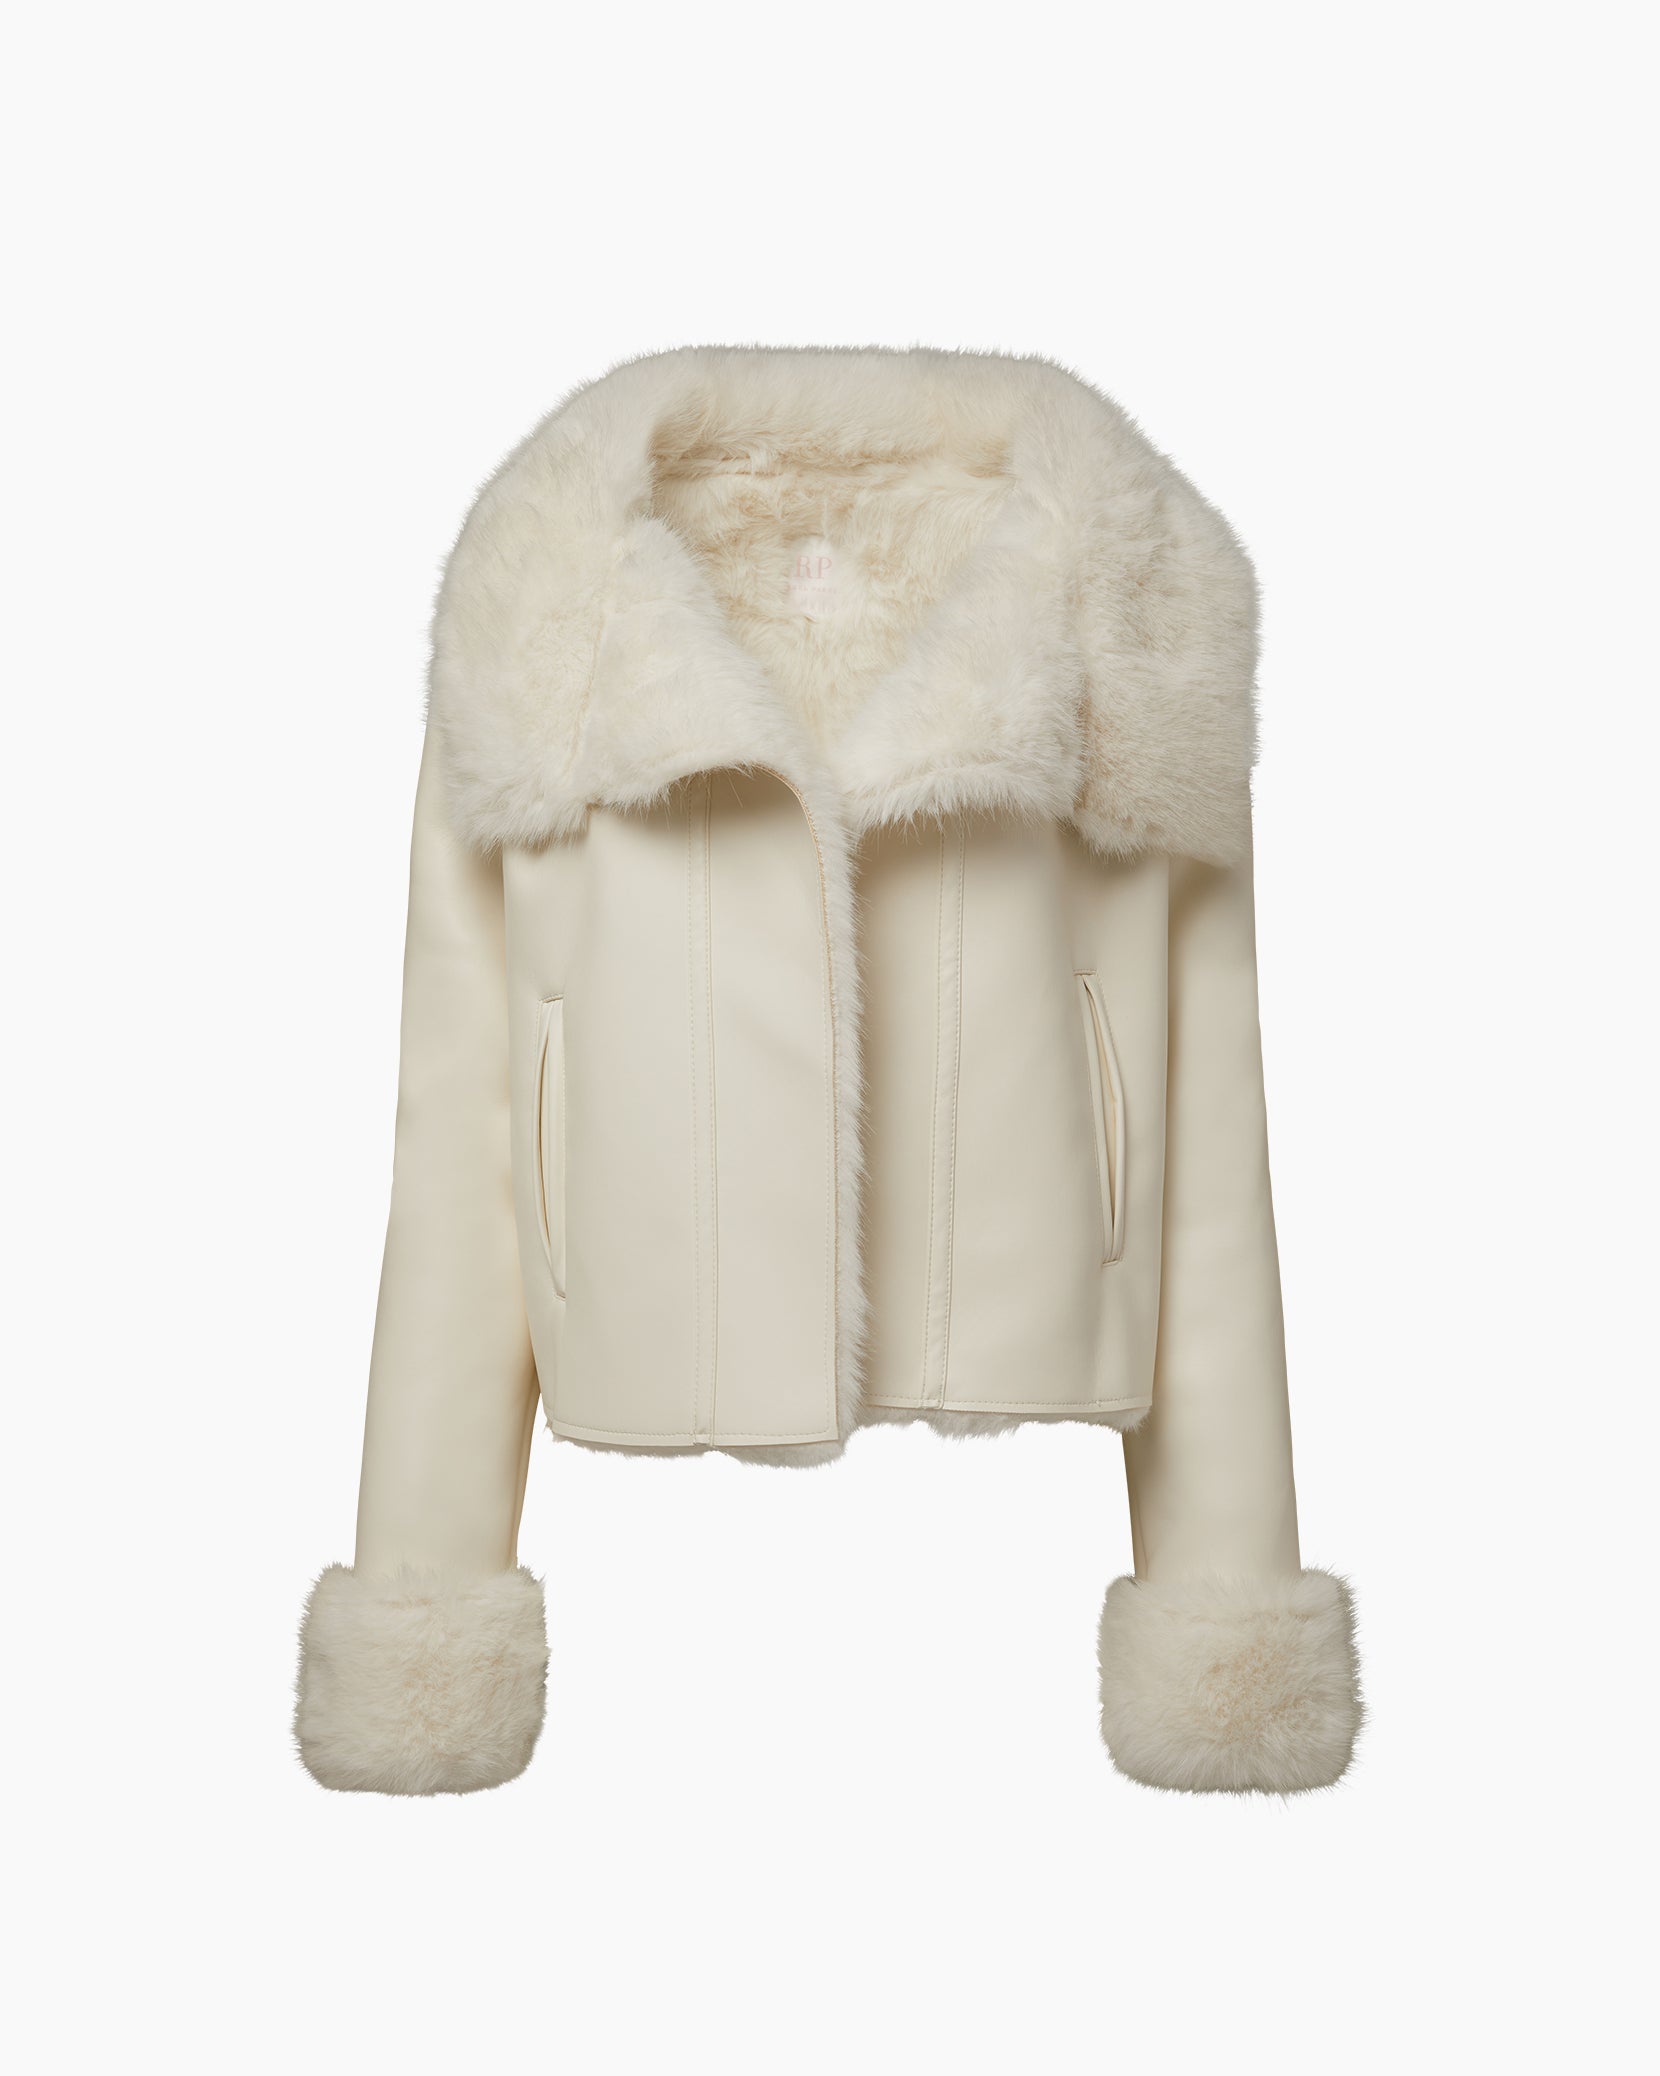 Faux Fur Coat – Rachel Parcell, Inc.